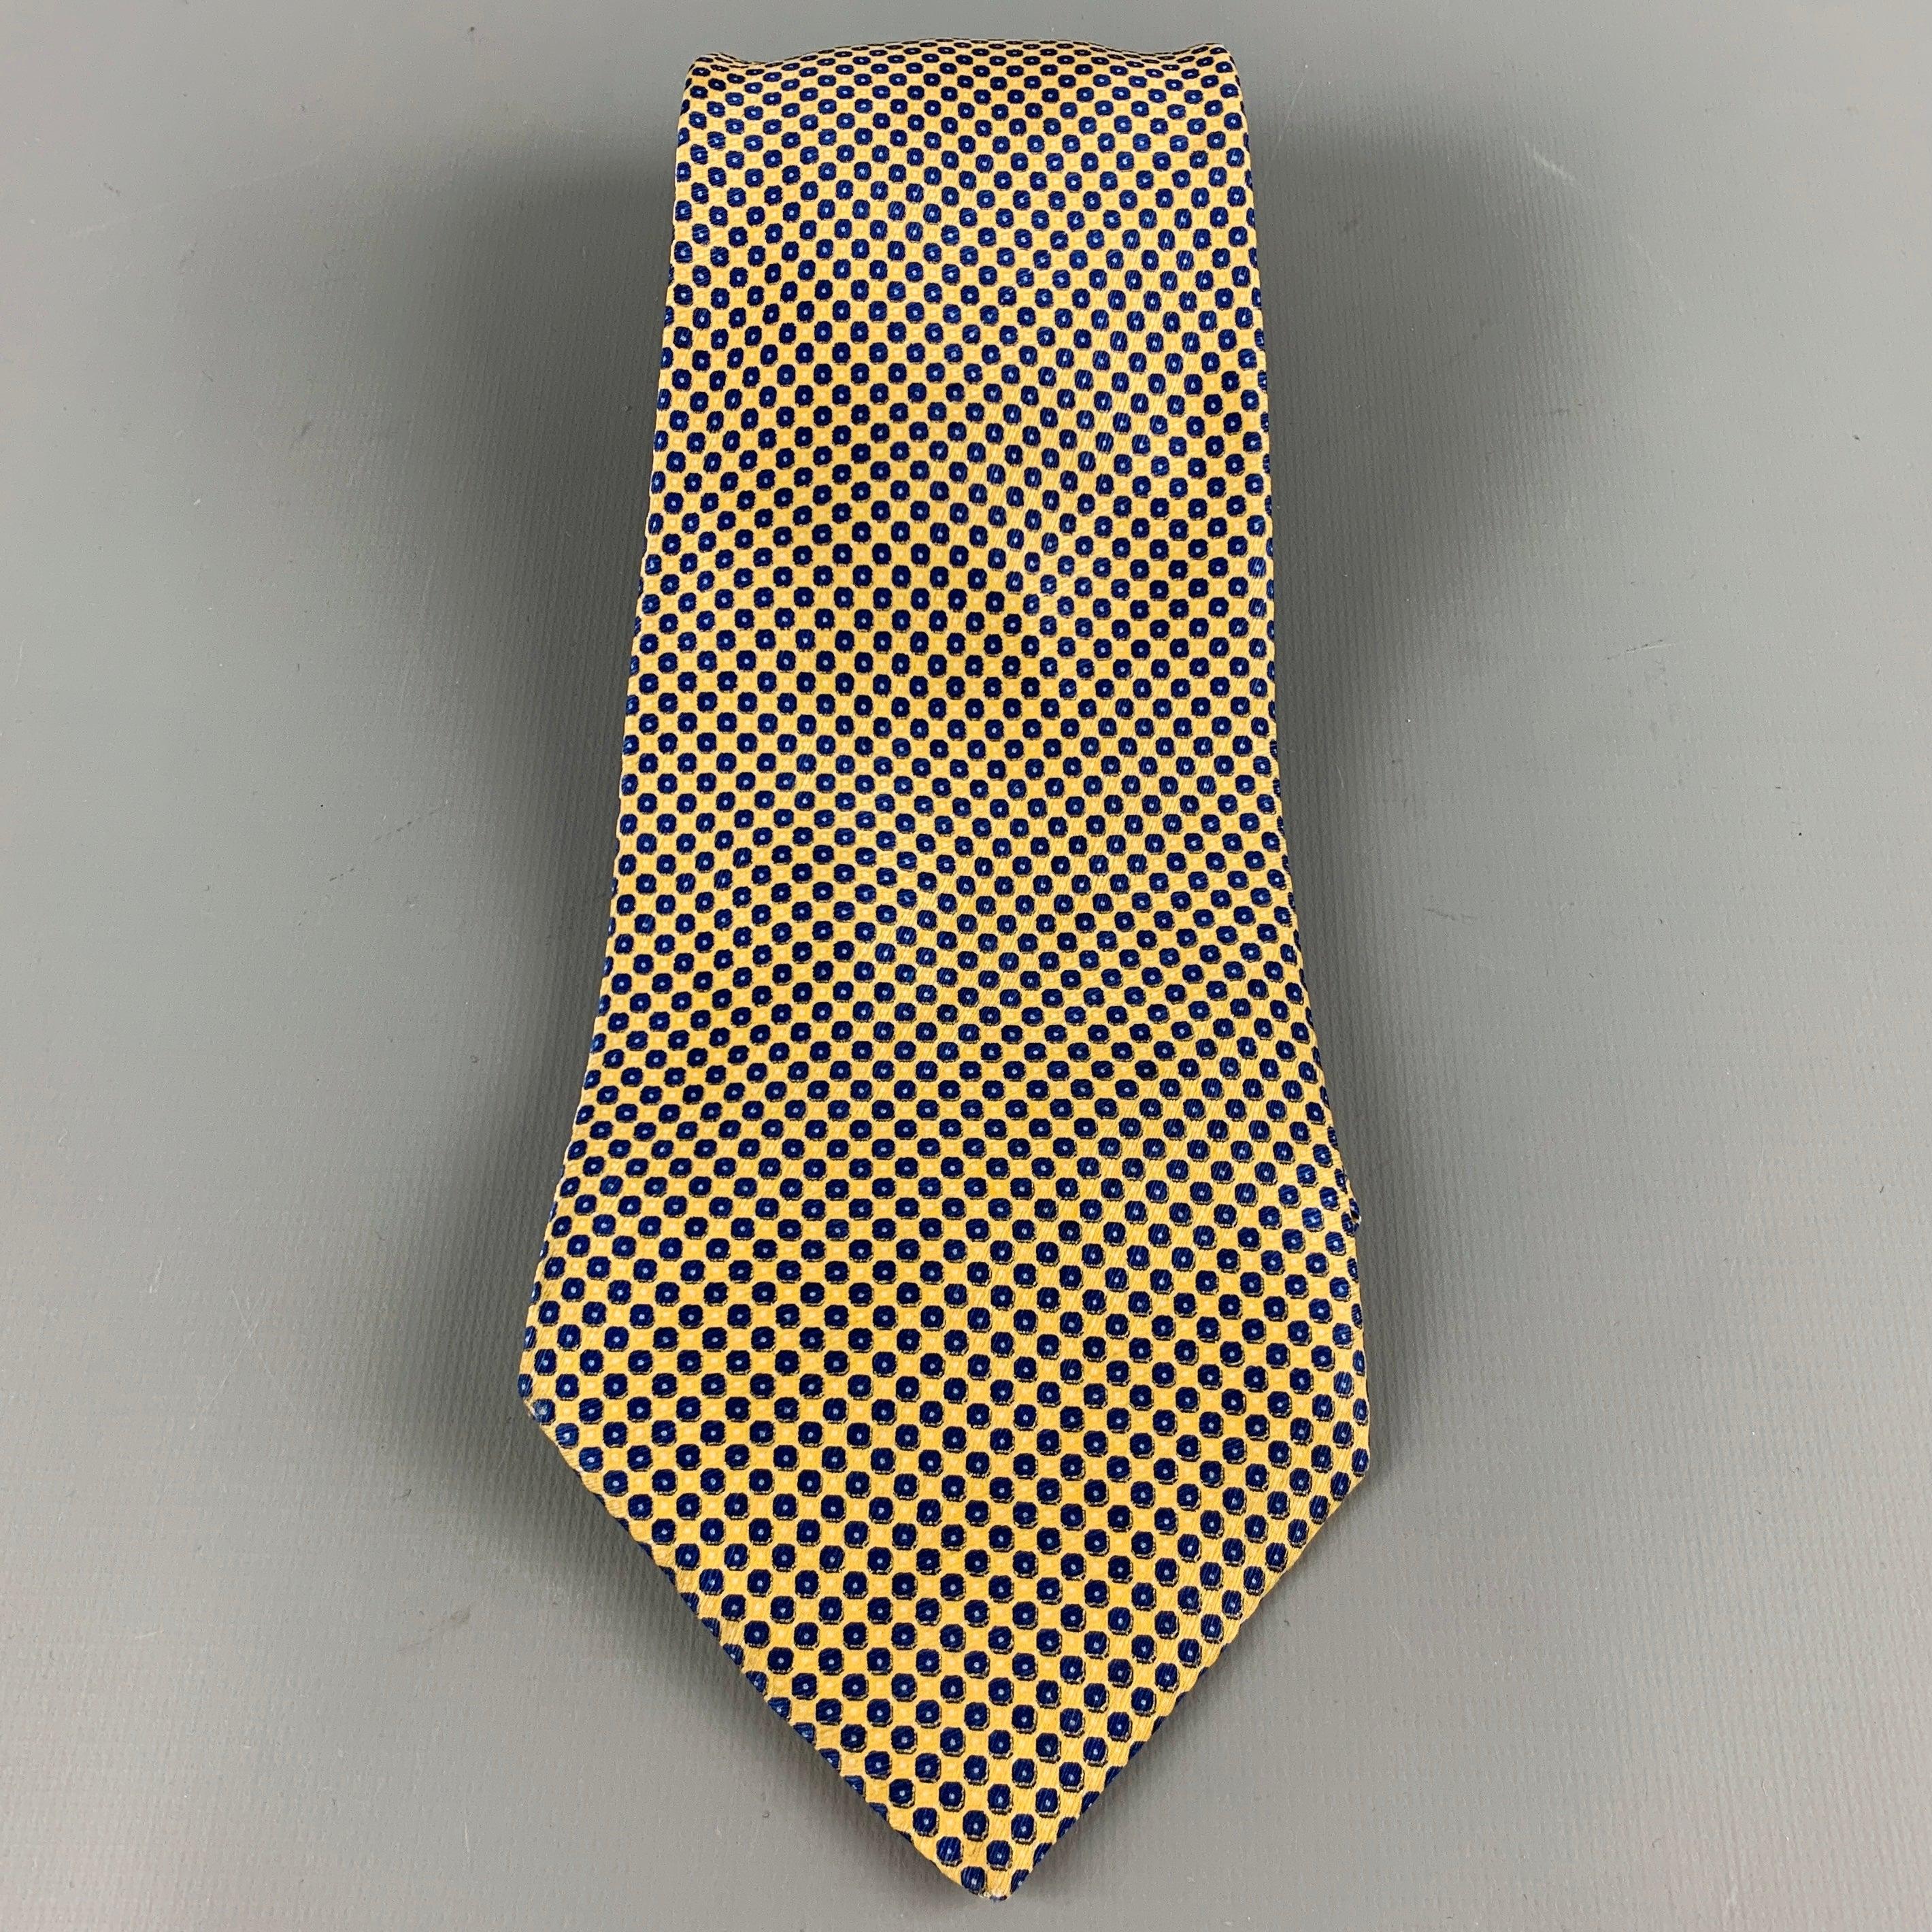 STEFANO RICCI
Krawatte aus gelber und marineblauer Seide mit Nagelkopfmuster, guter gebrauchter Zustand. Mäßige Verfärbung. 

Abmessungen: 
  Breite: 4 Zoll Länge: 62 Zoll 
  
  
 
Referenz-Nr.: 128761
Kategorie: Krawatte
Mehr Details
    
Marke: 